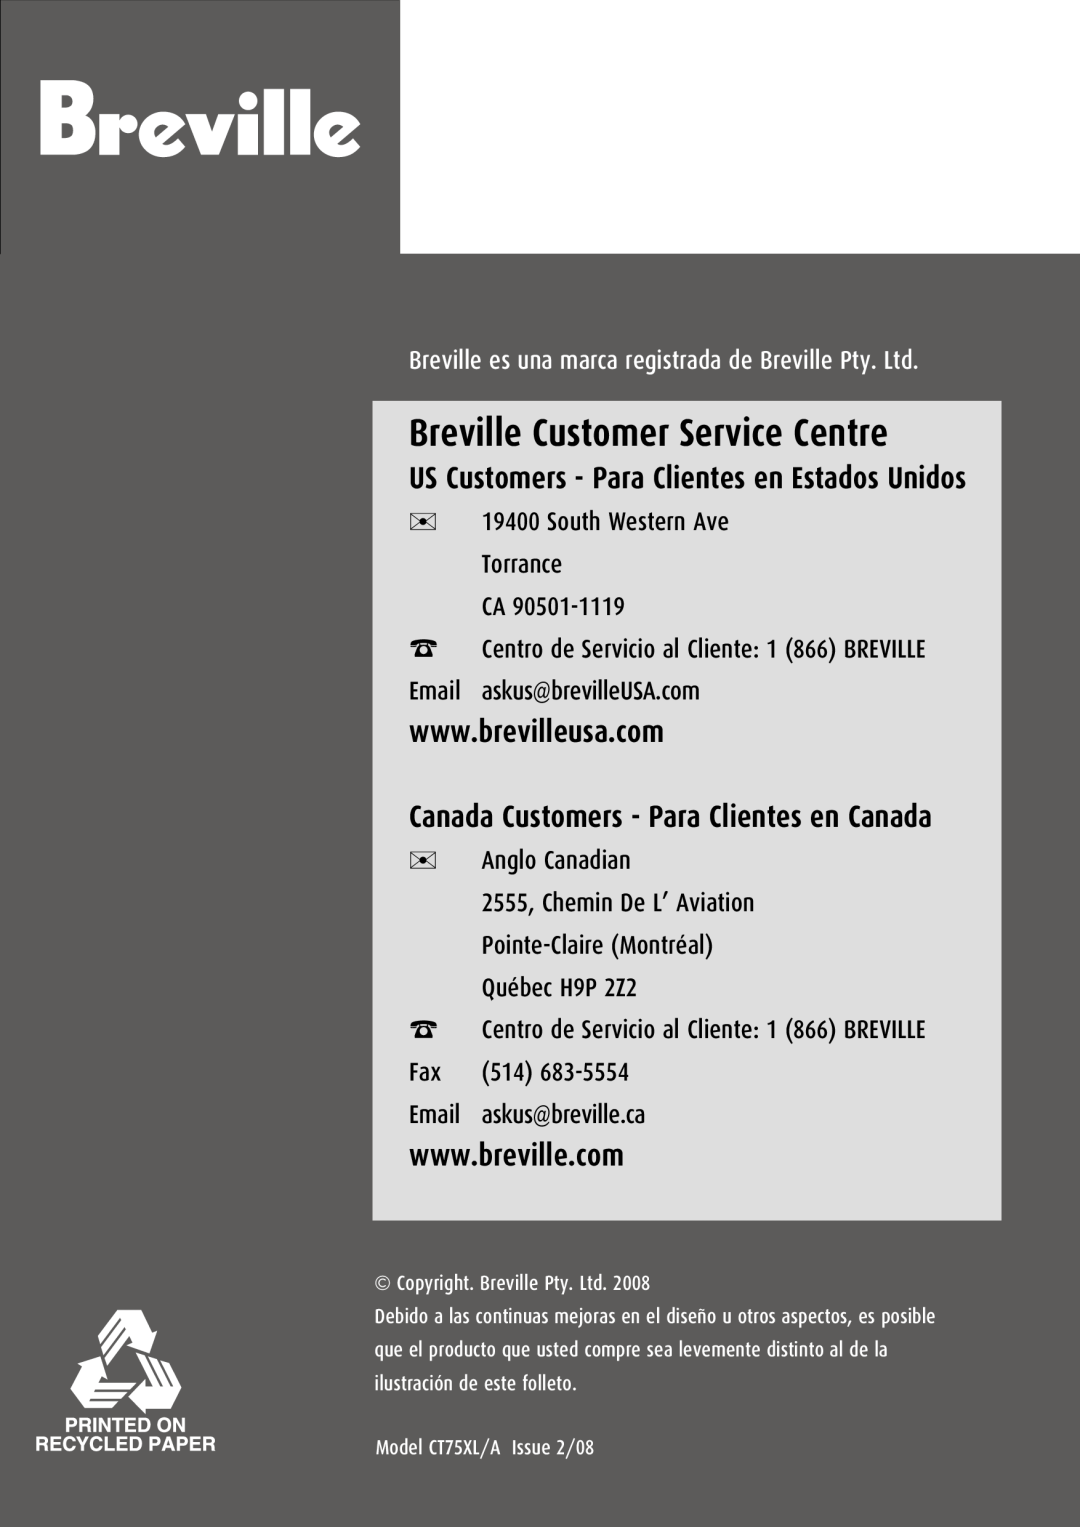 Breville CT75XL/A manual Breville Customer Service Centre, Canada Customers - Para Clientes en Canada 